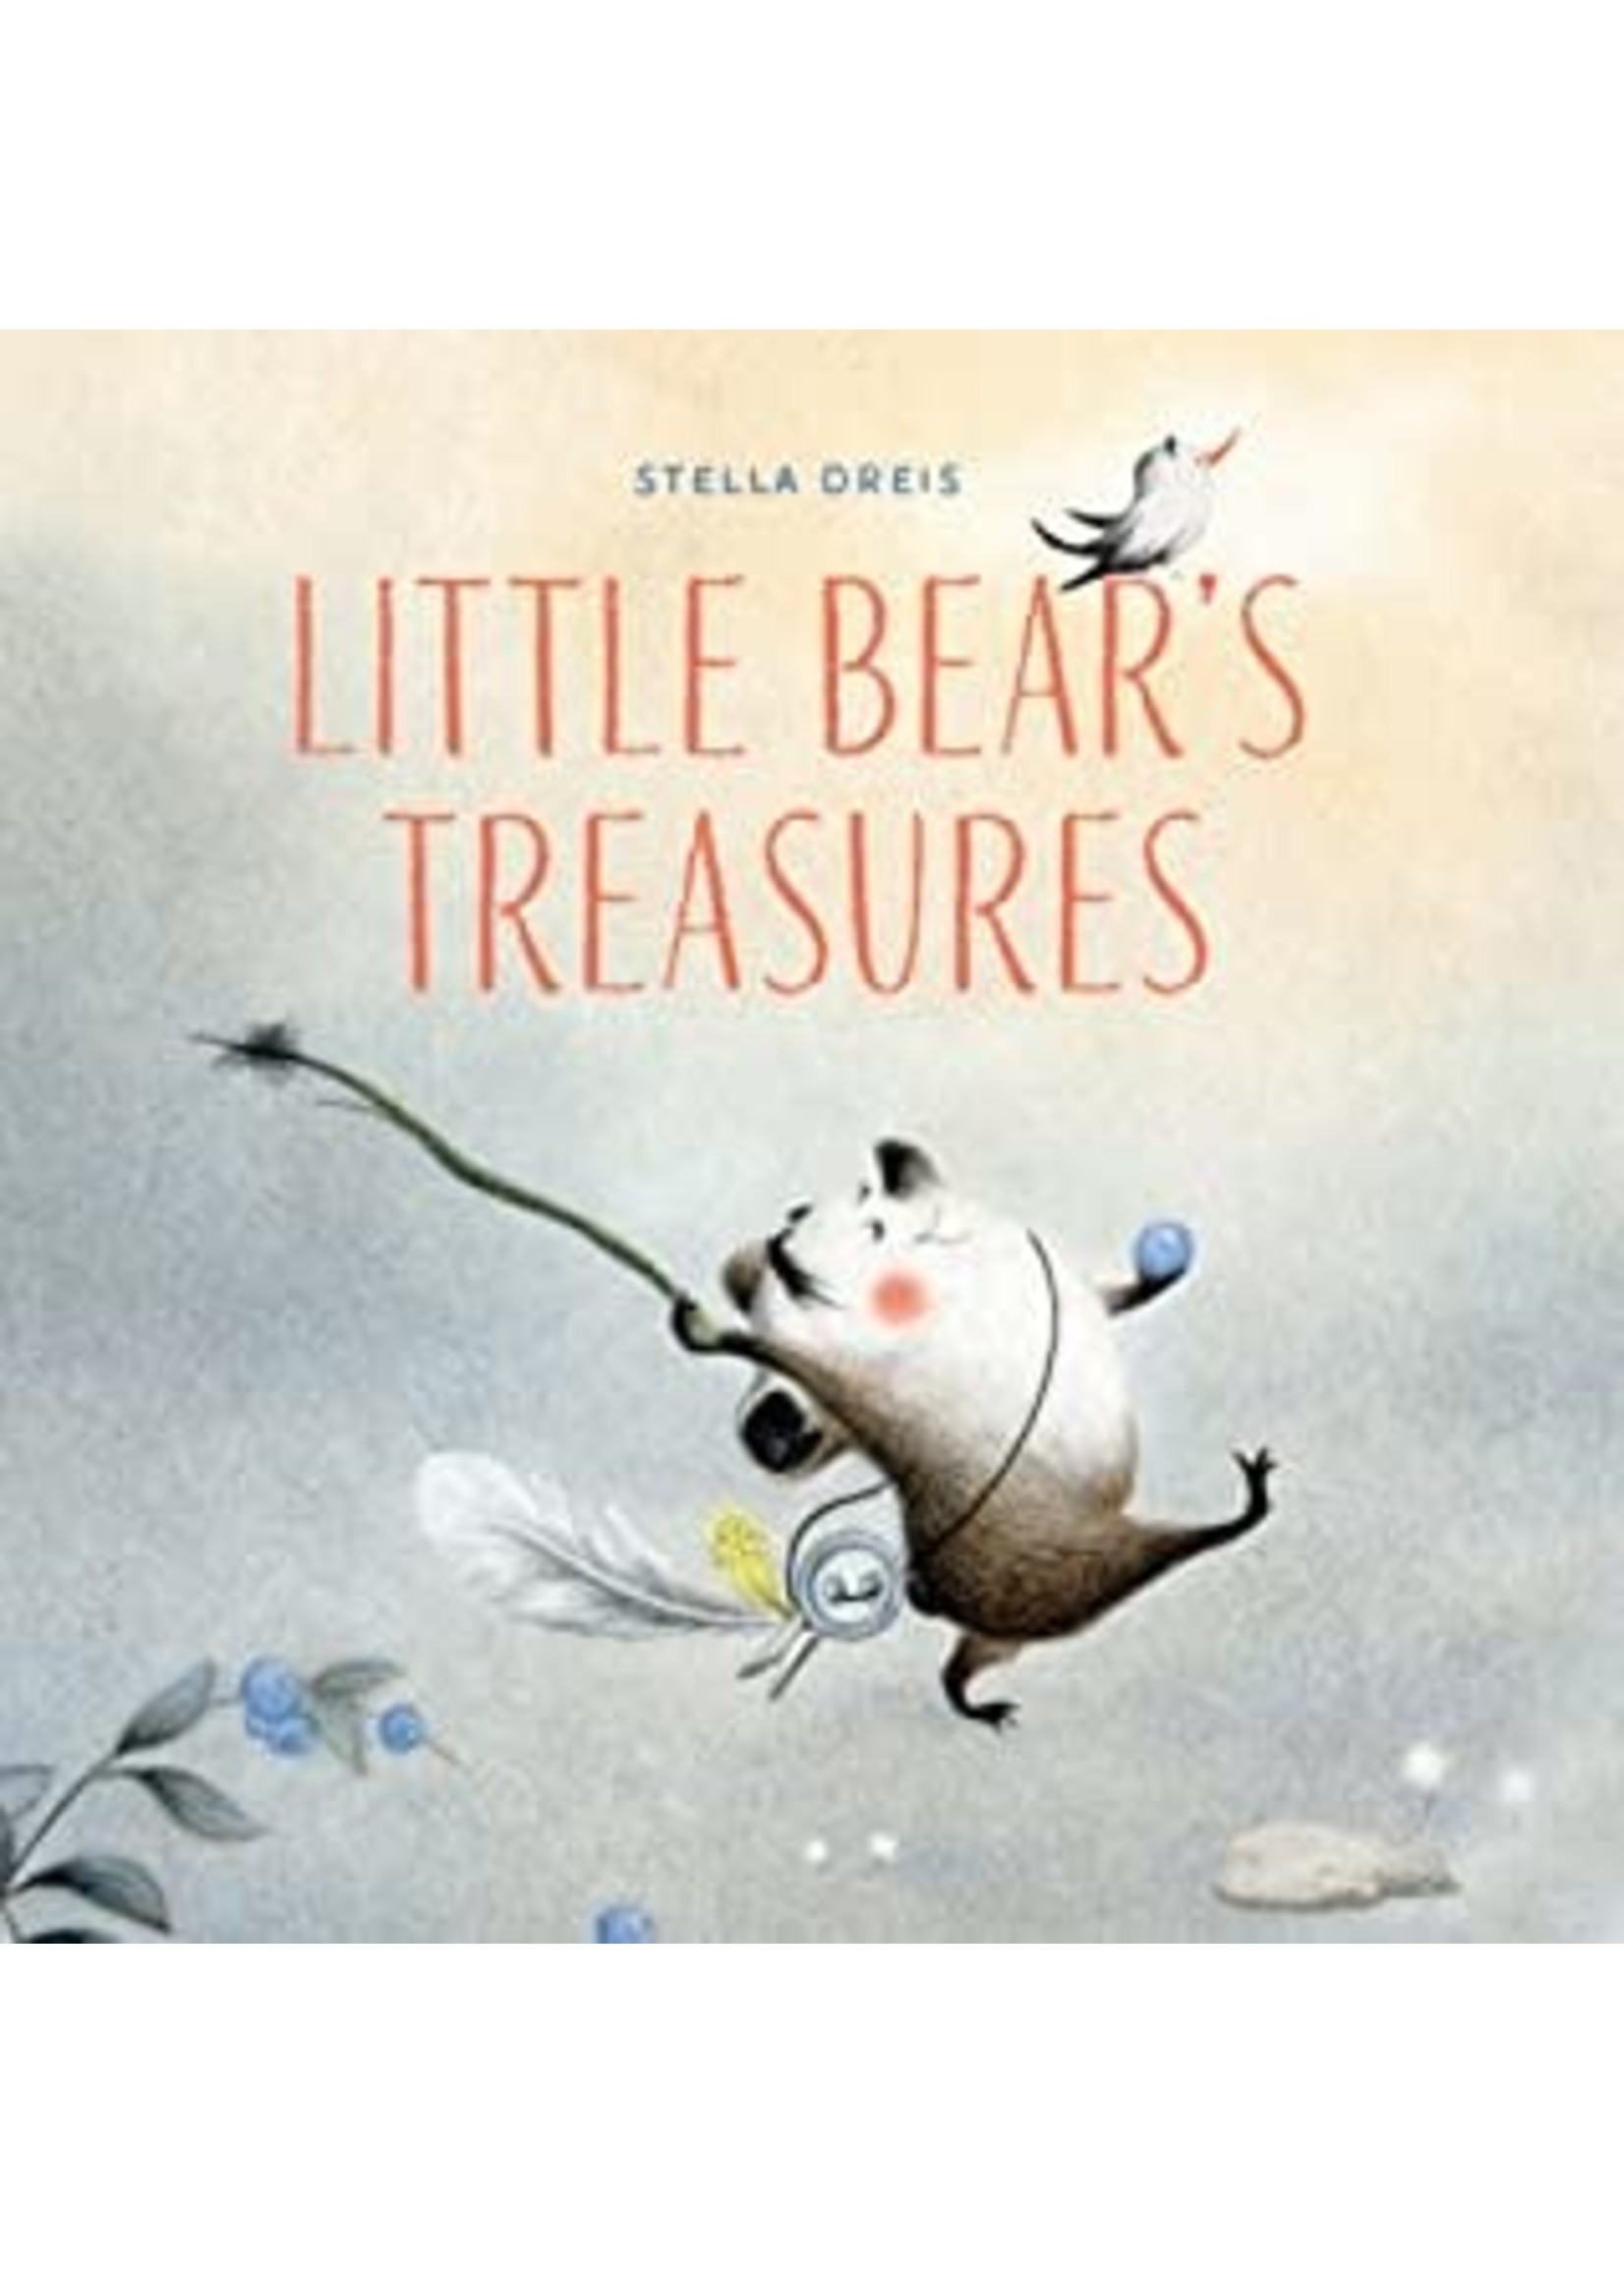 Little Bear's Treasure by Stella Dreis